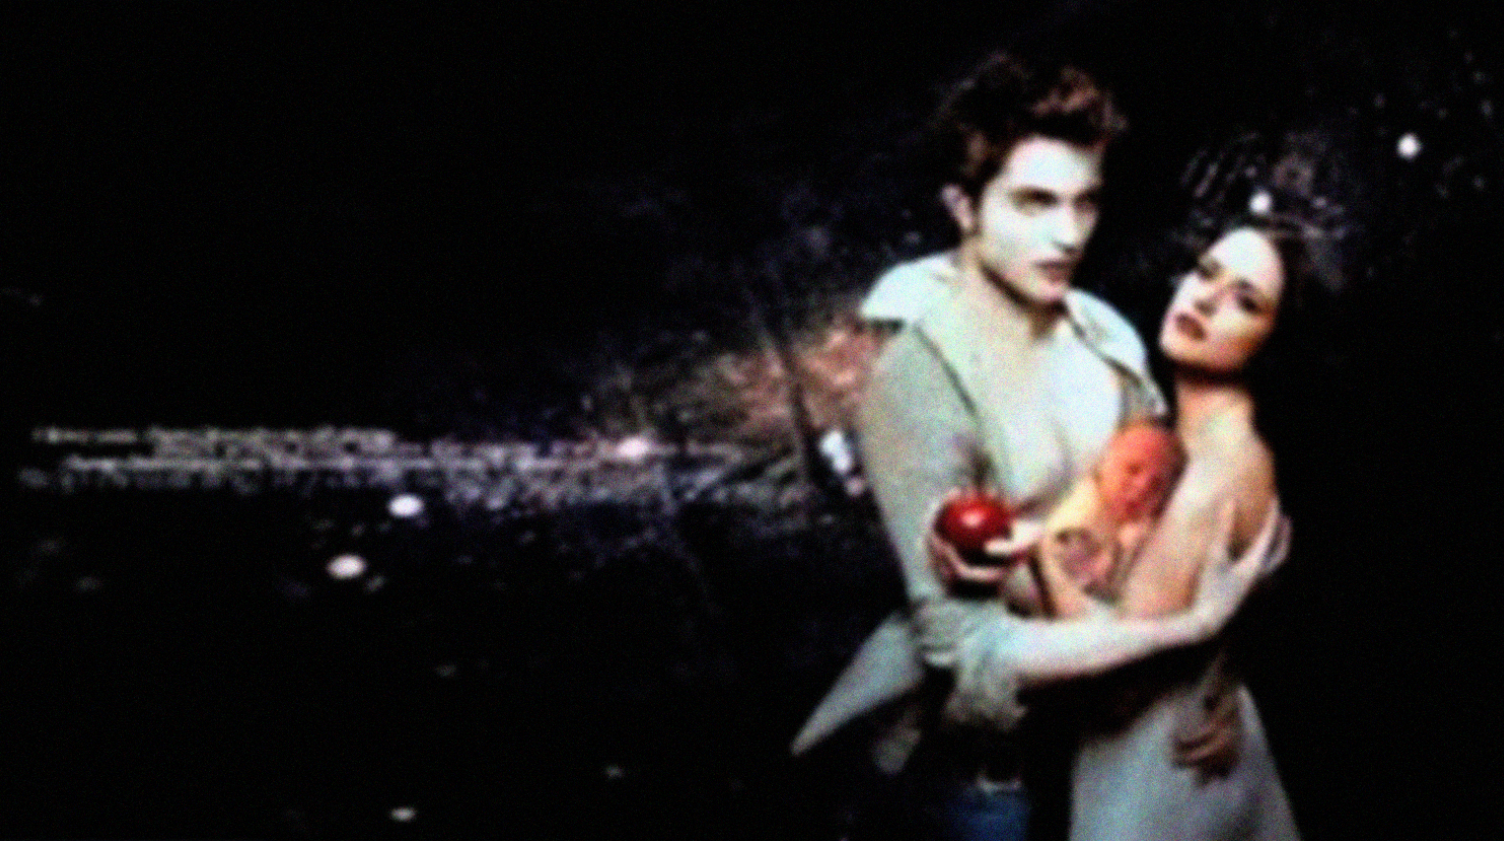 Twilight Saga: Breaking Dawn Part 2 diputar di Bioskop Trans TV malam ini. (Facebook)